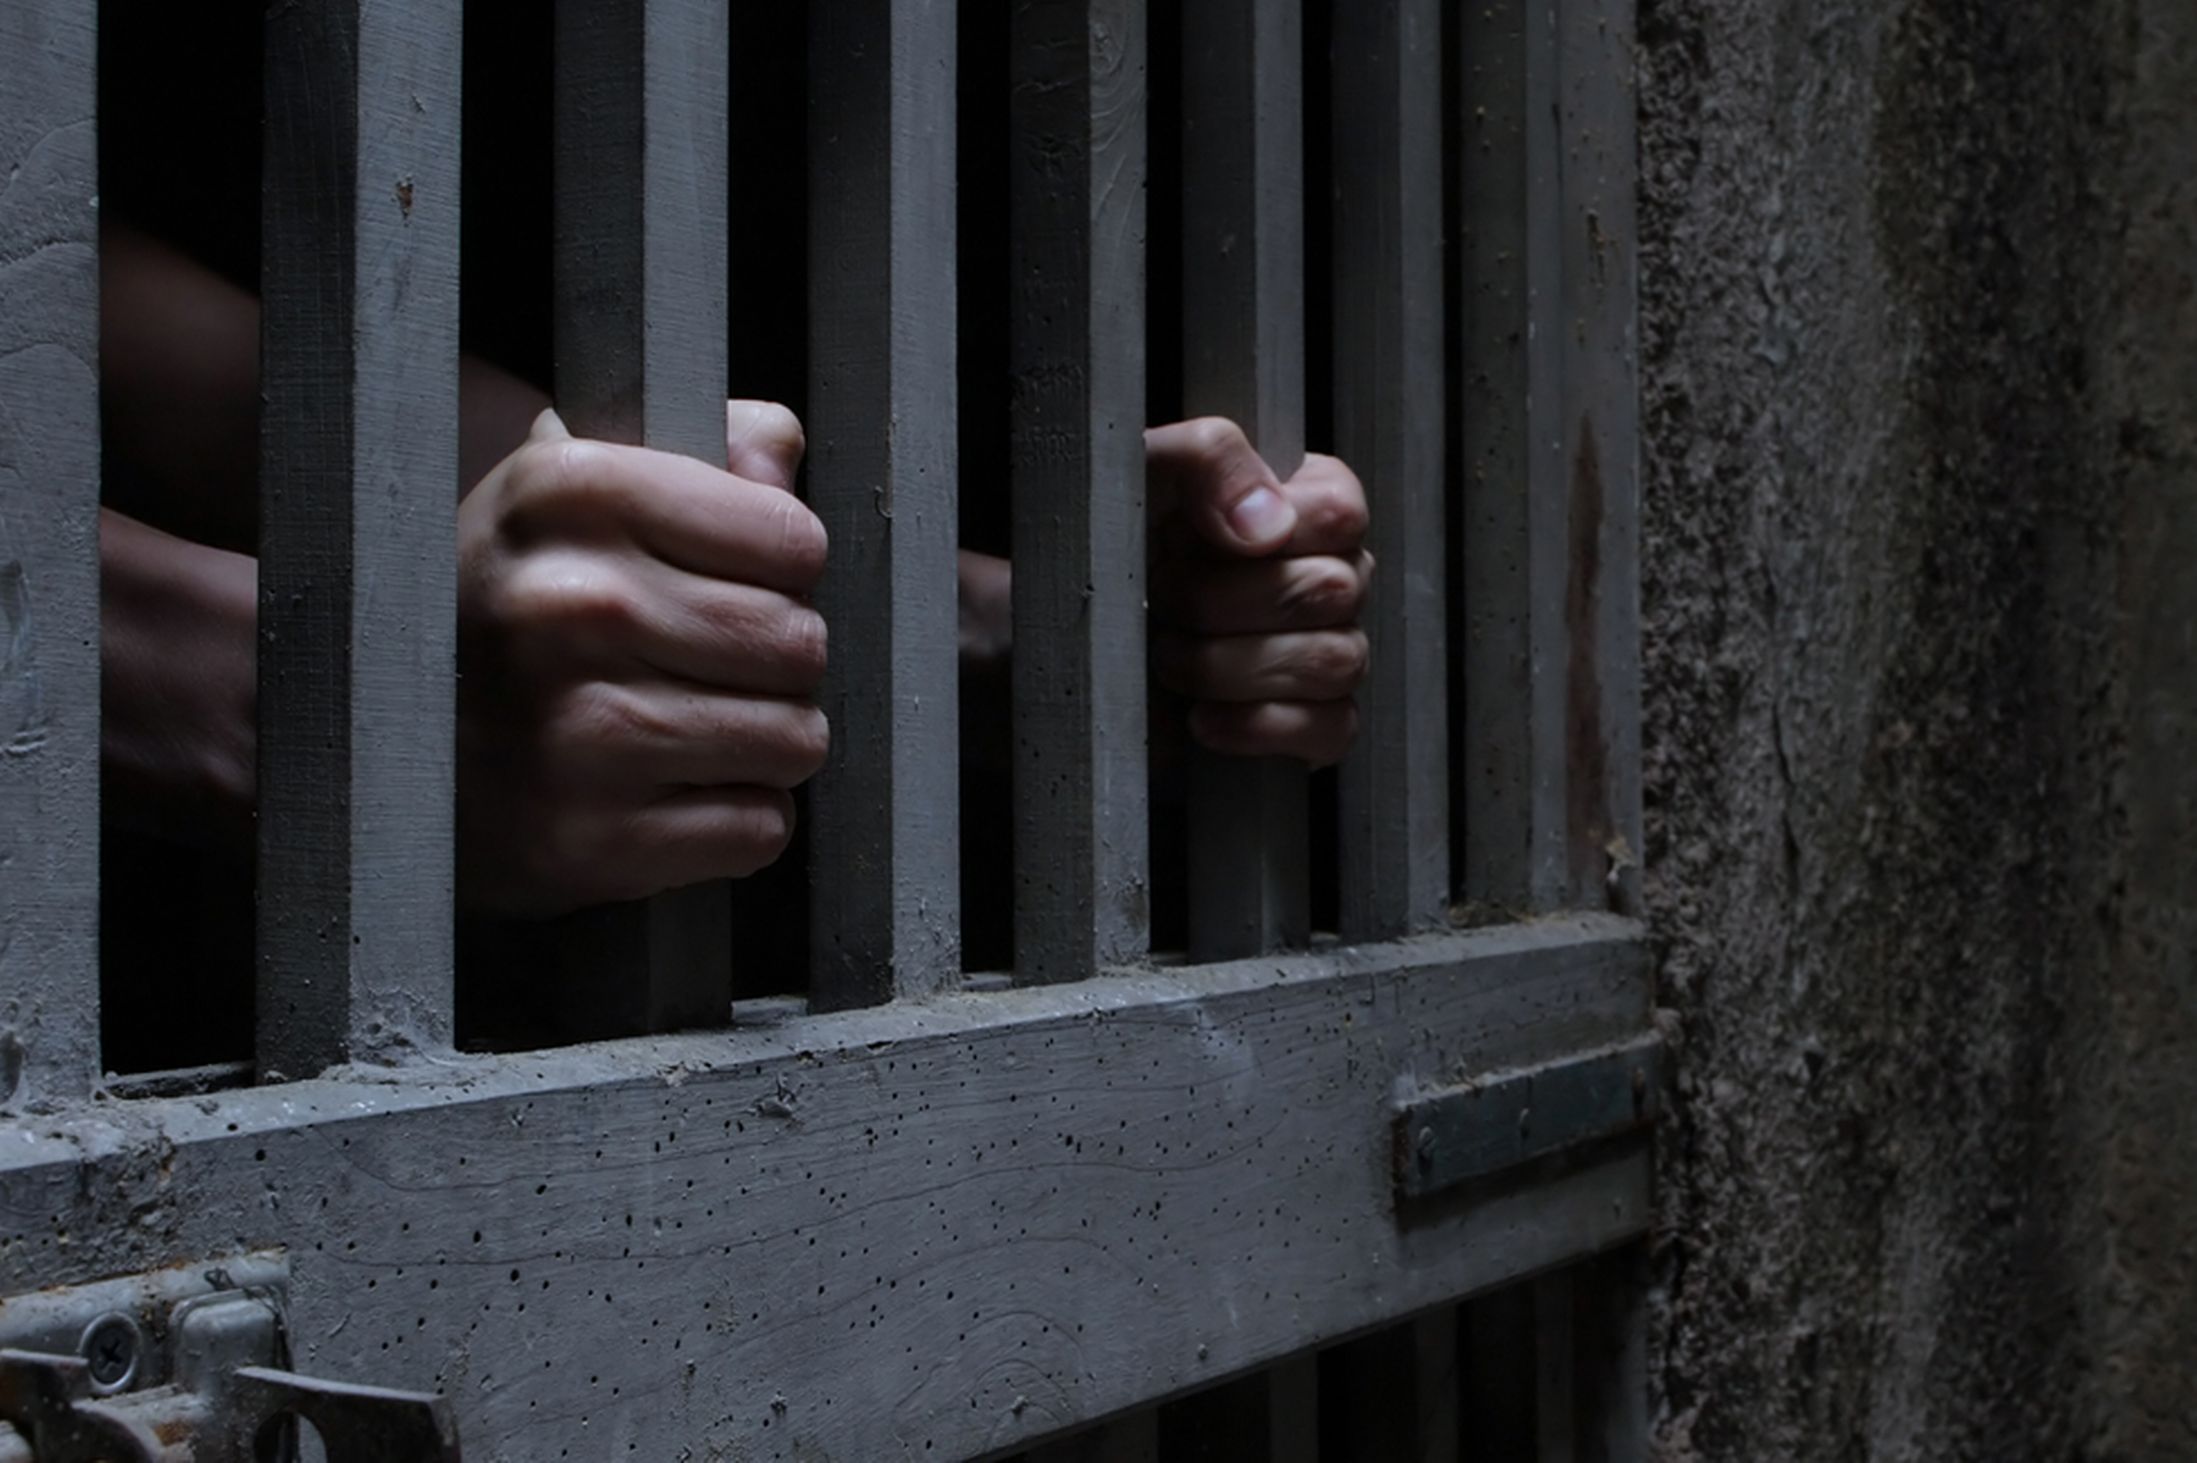 سجن الناظور ينفي إضراب سجين عن الطعام بسبب اللّقاح